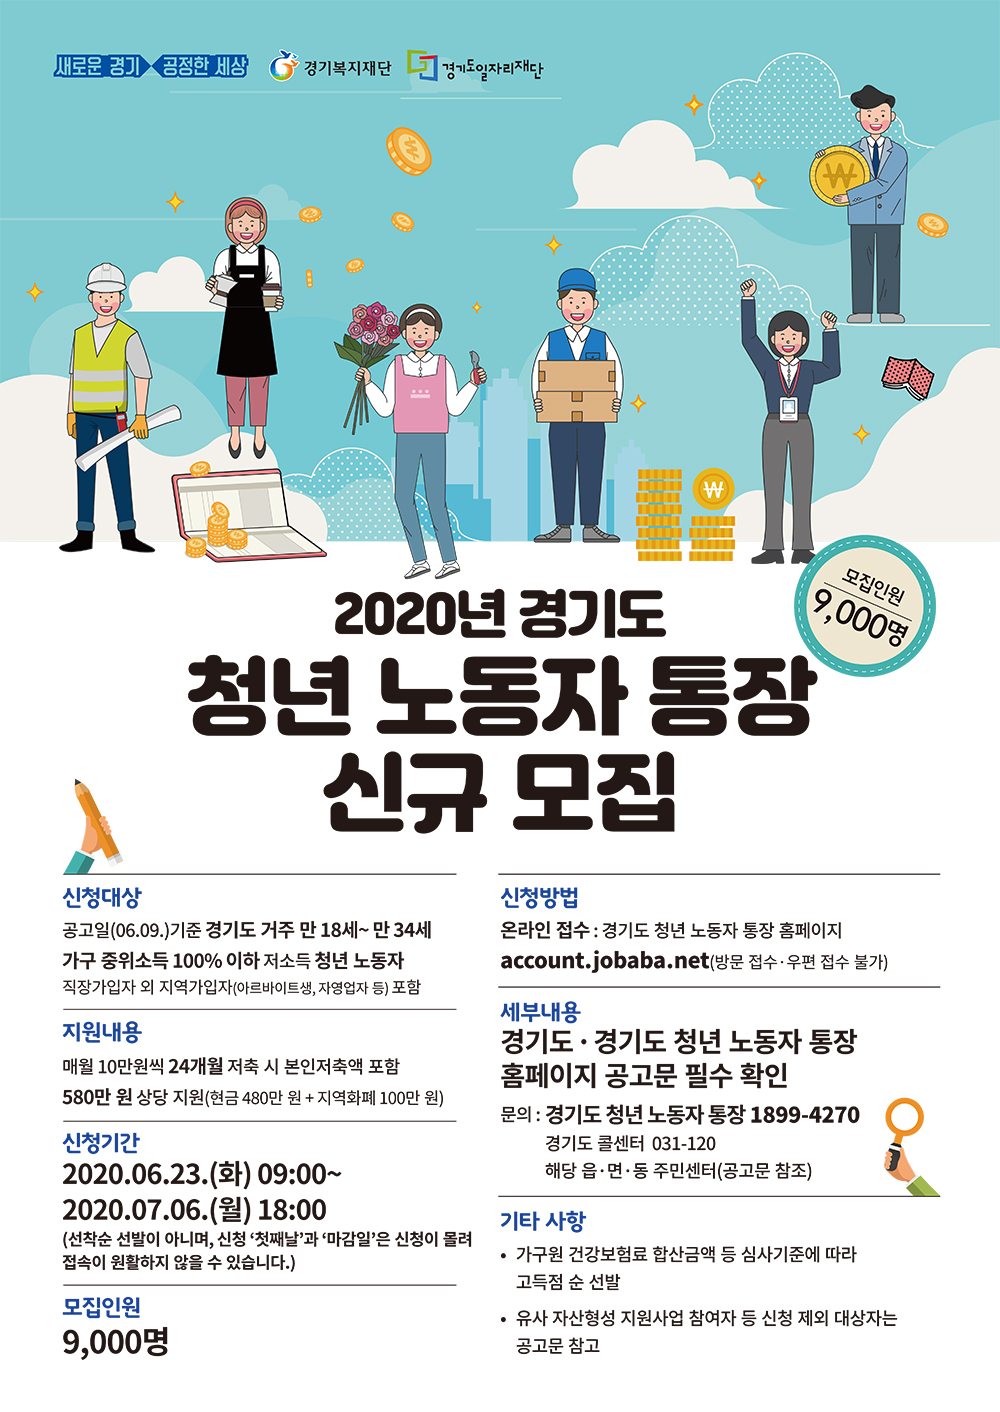 2020년 경기도 청년 노동자 통장 신규 모집